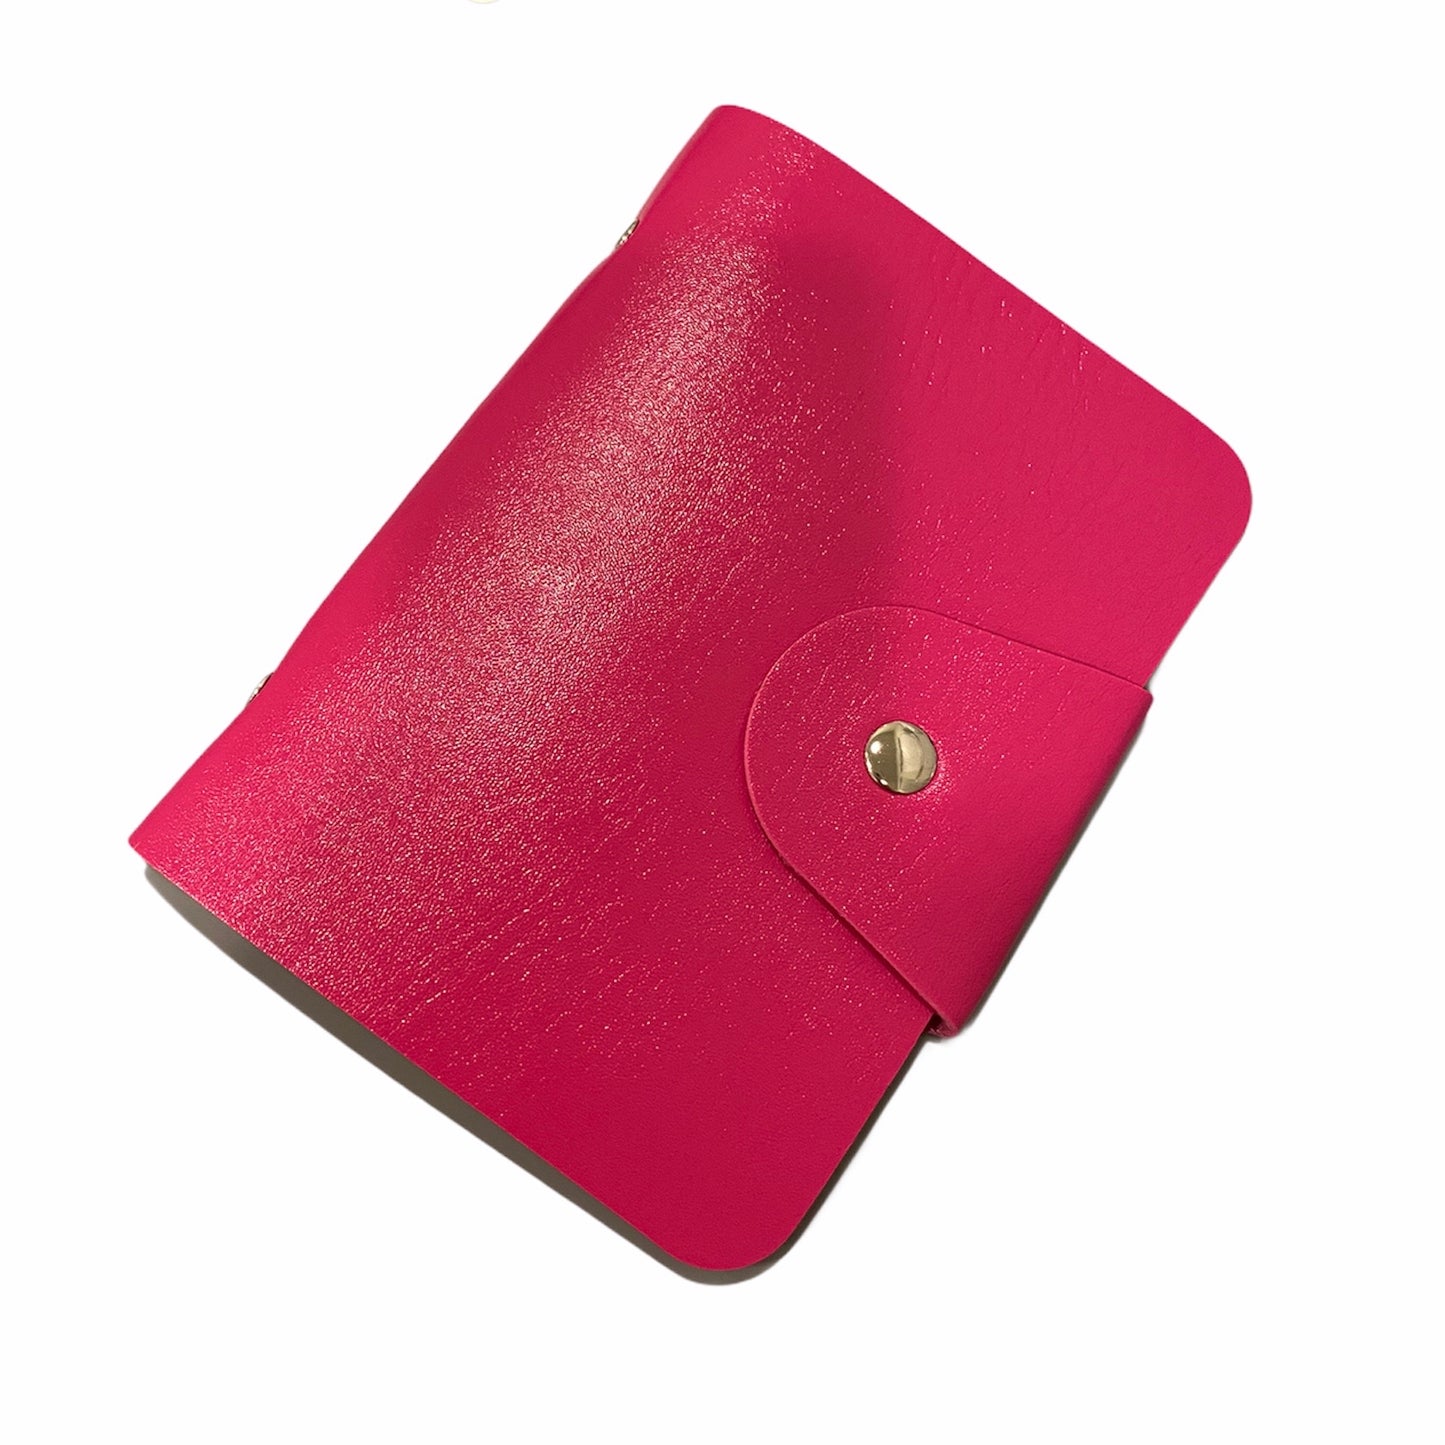 Binder for Stamping plates, 16 Pocket, Pink